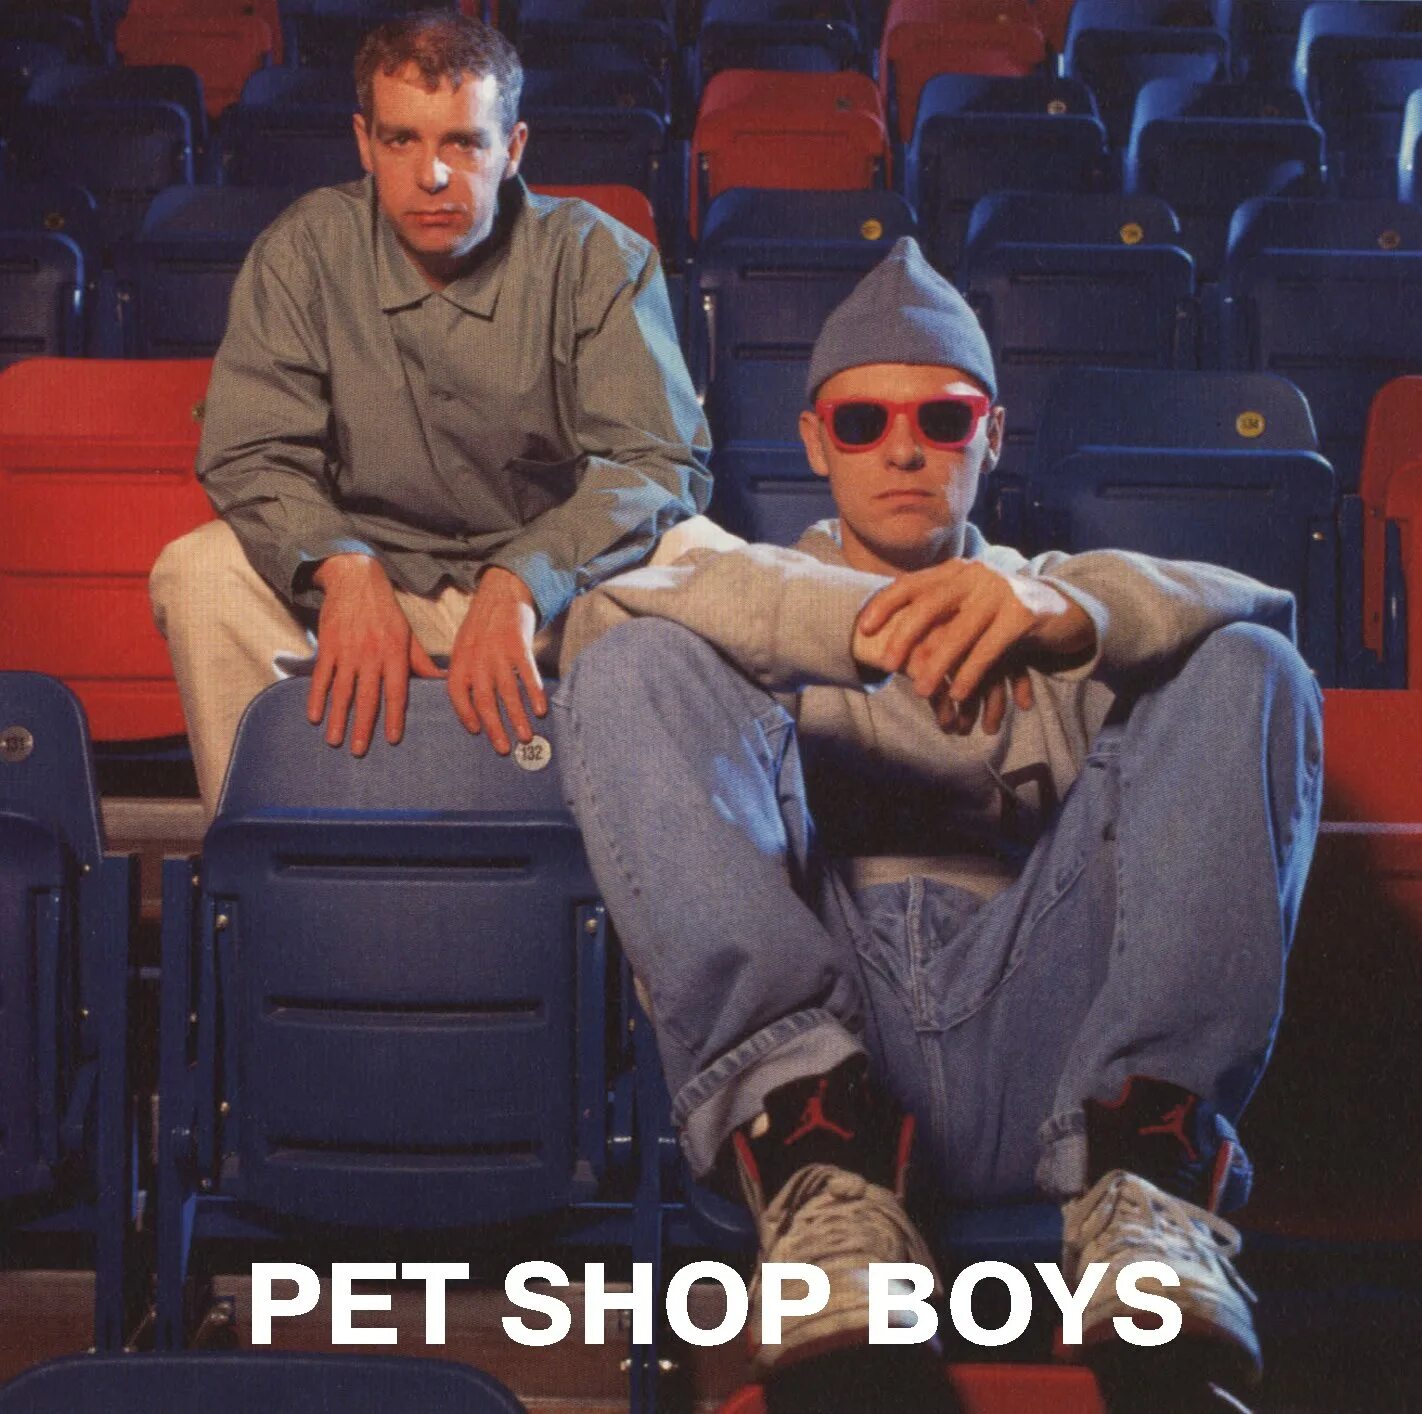 Пет шоп бойс 90. Pet shop boys. Pet shop boys фото. Pet shop boys Single. Pet shop boys хиты.